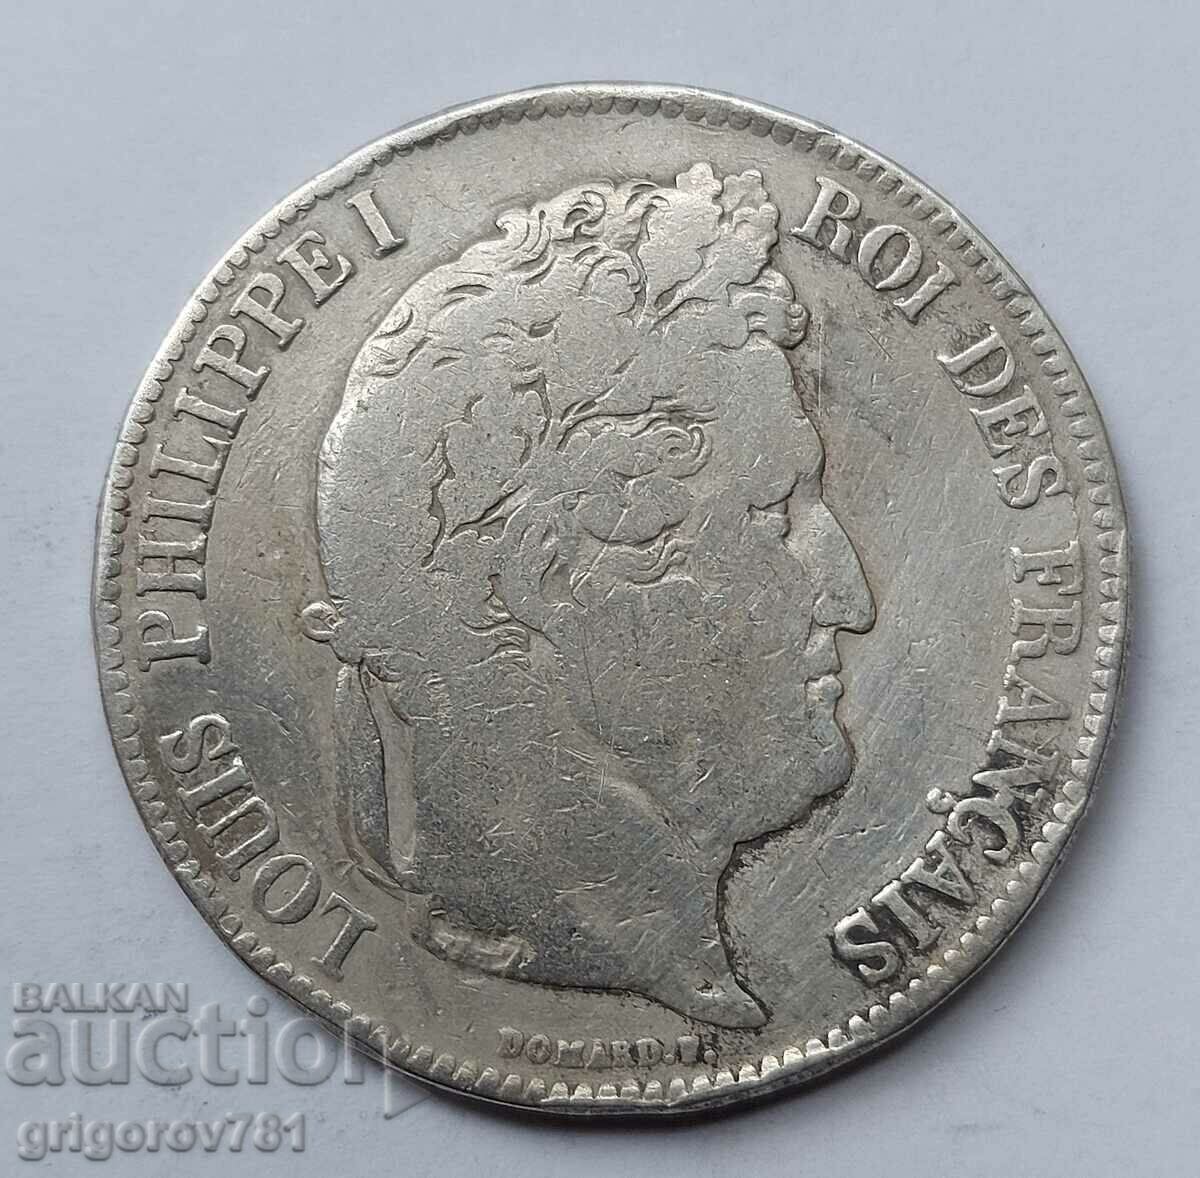 5 Φράγκα Ασήμι Γαλλία 1834 D - Ασημένιο νόμισμα #125